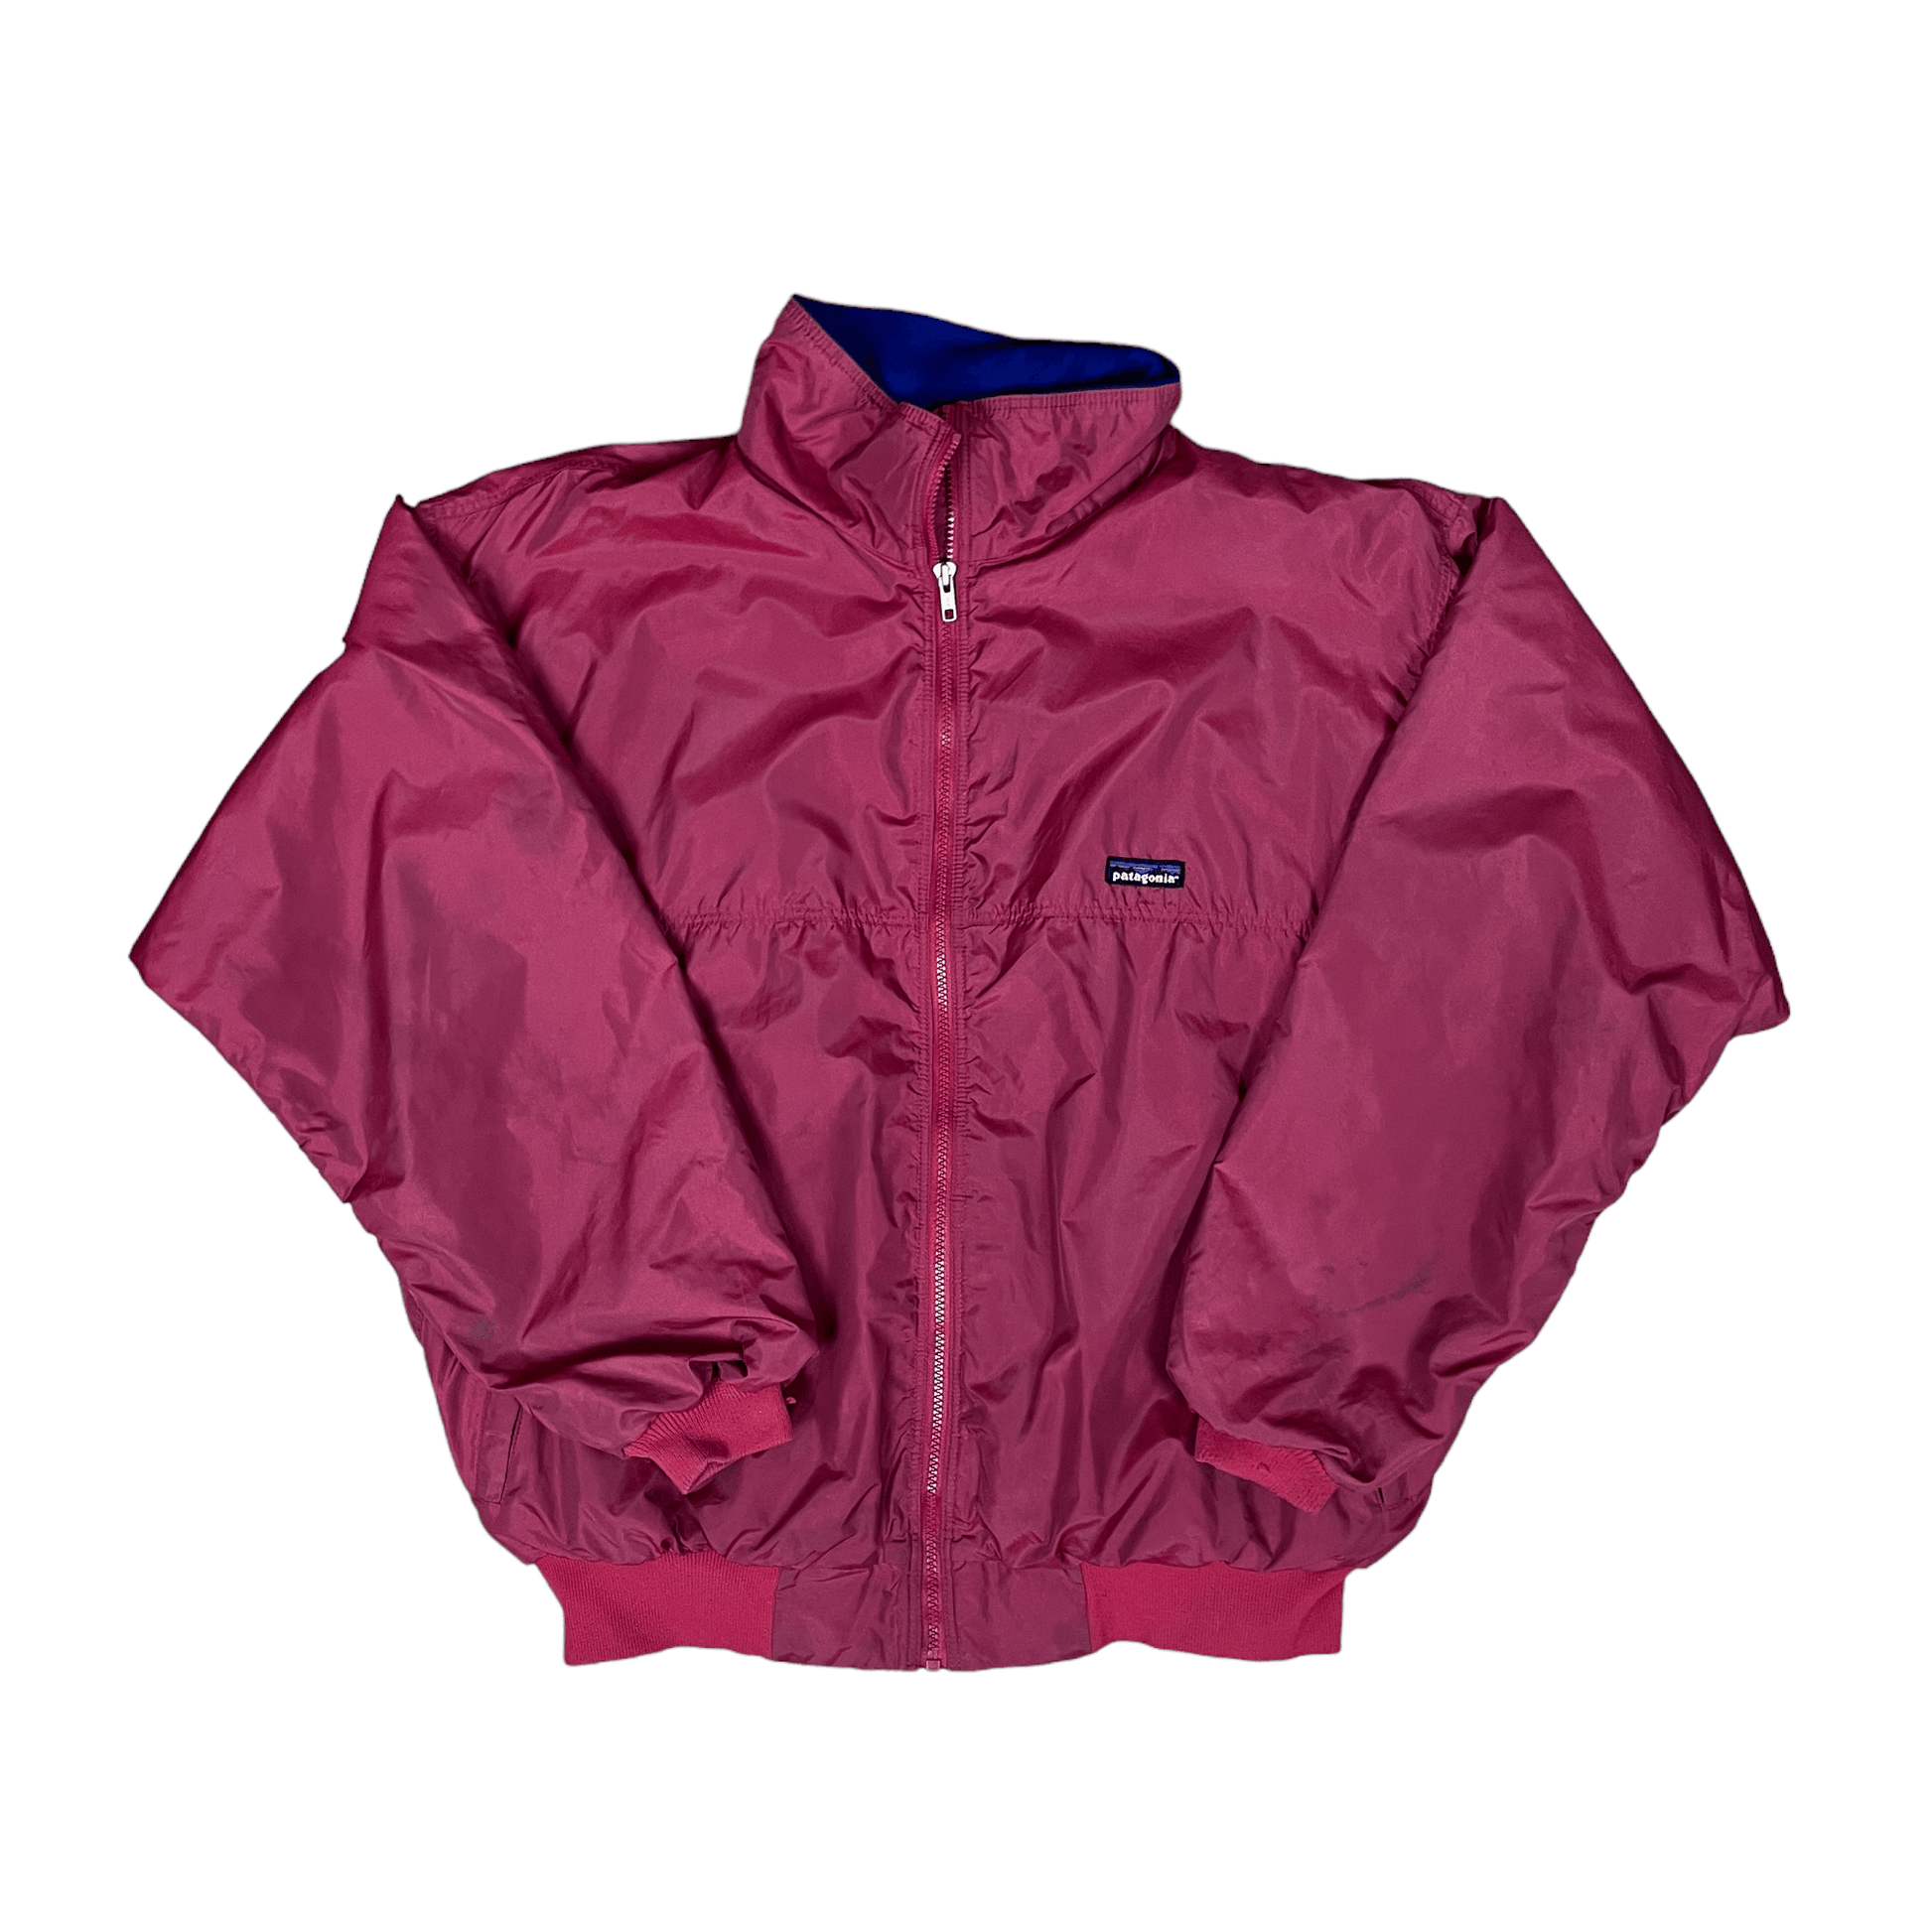 Vintage 90s Burgundy Patagonia Jacket - Extra Large - The Streetwear Studio